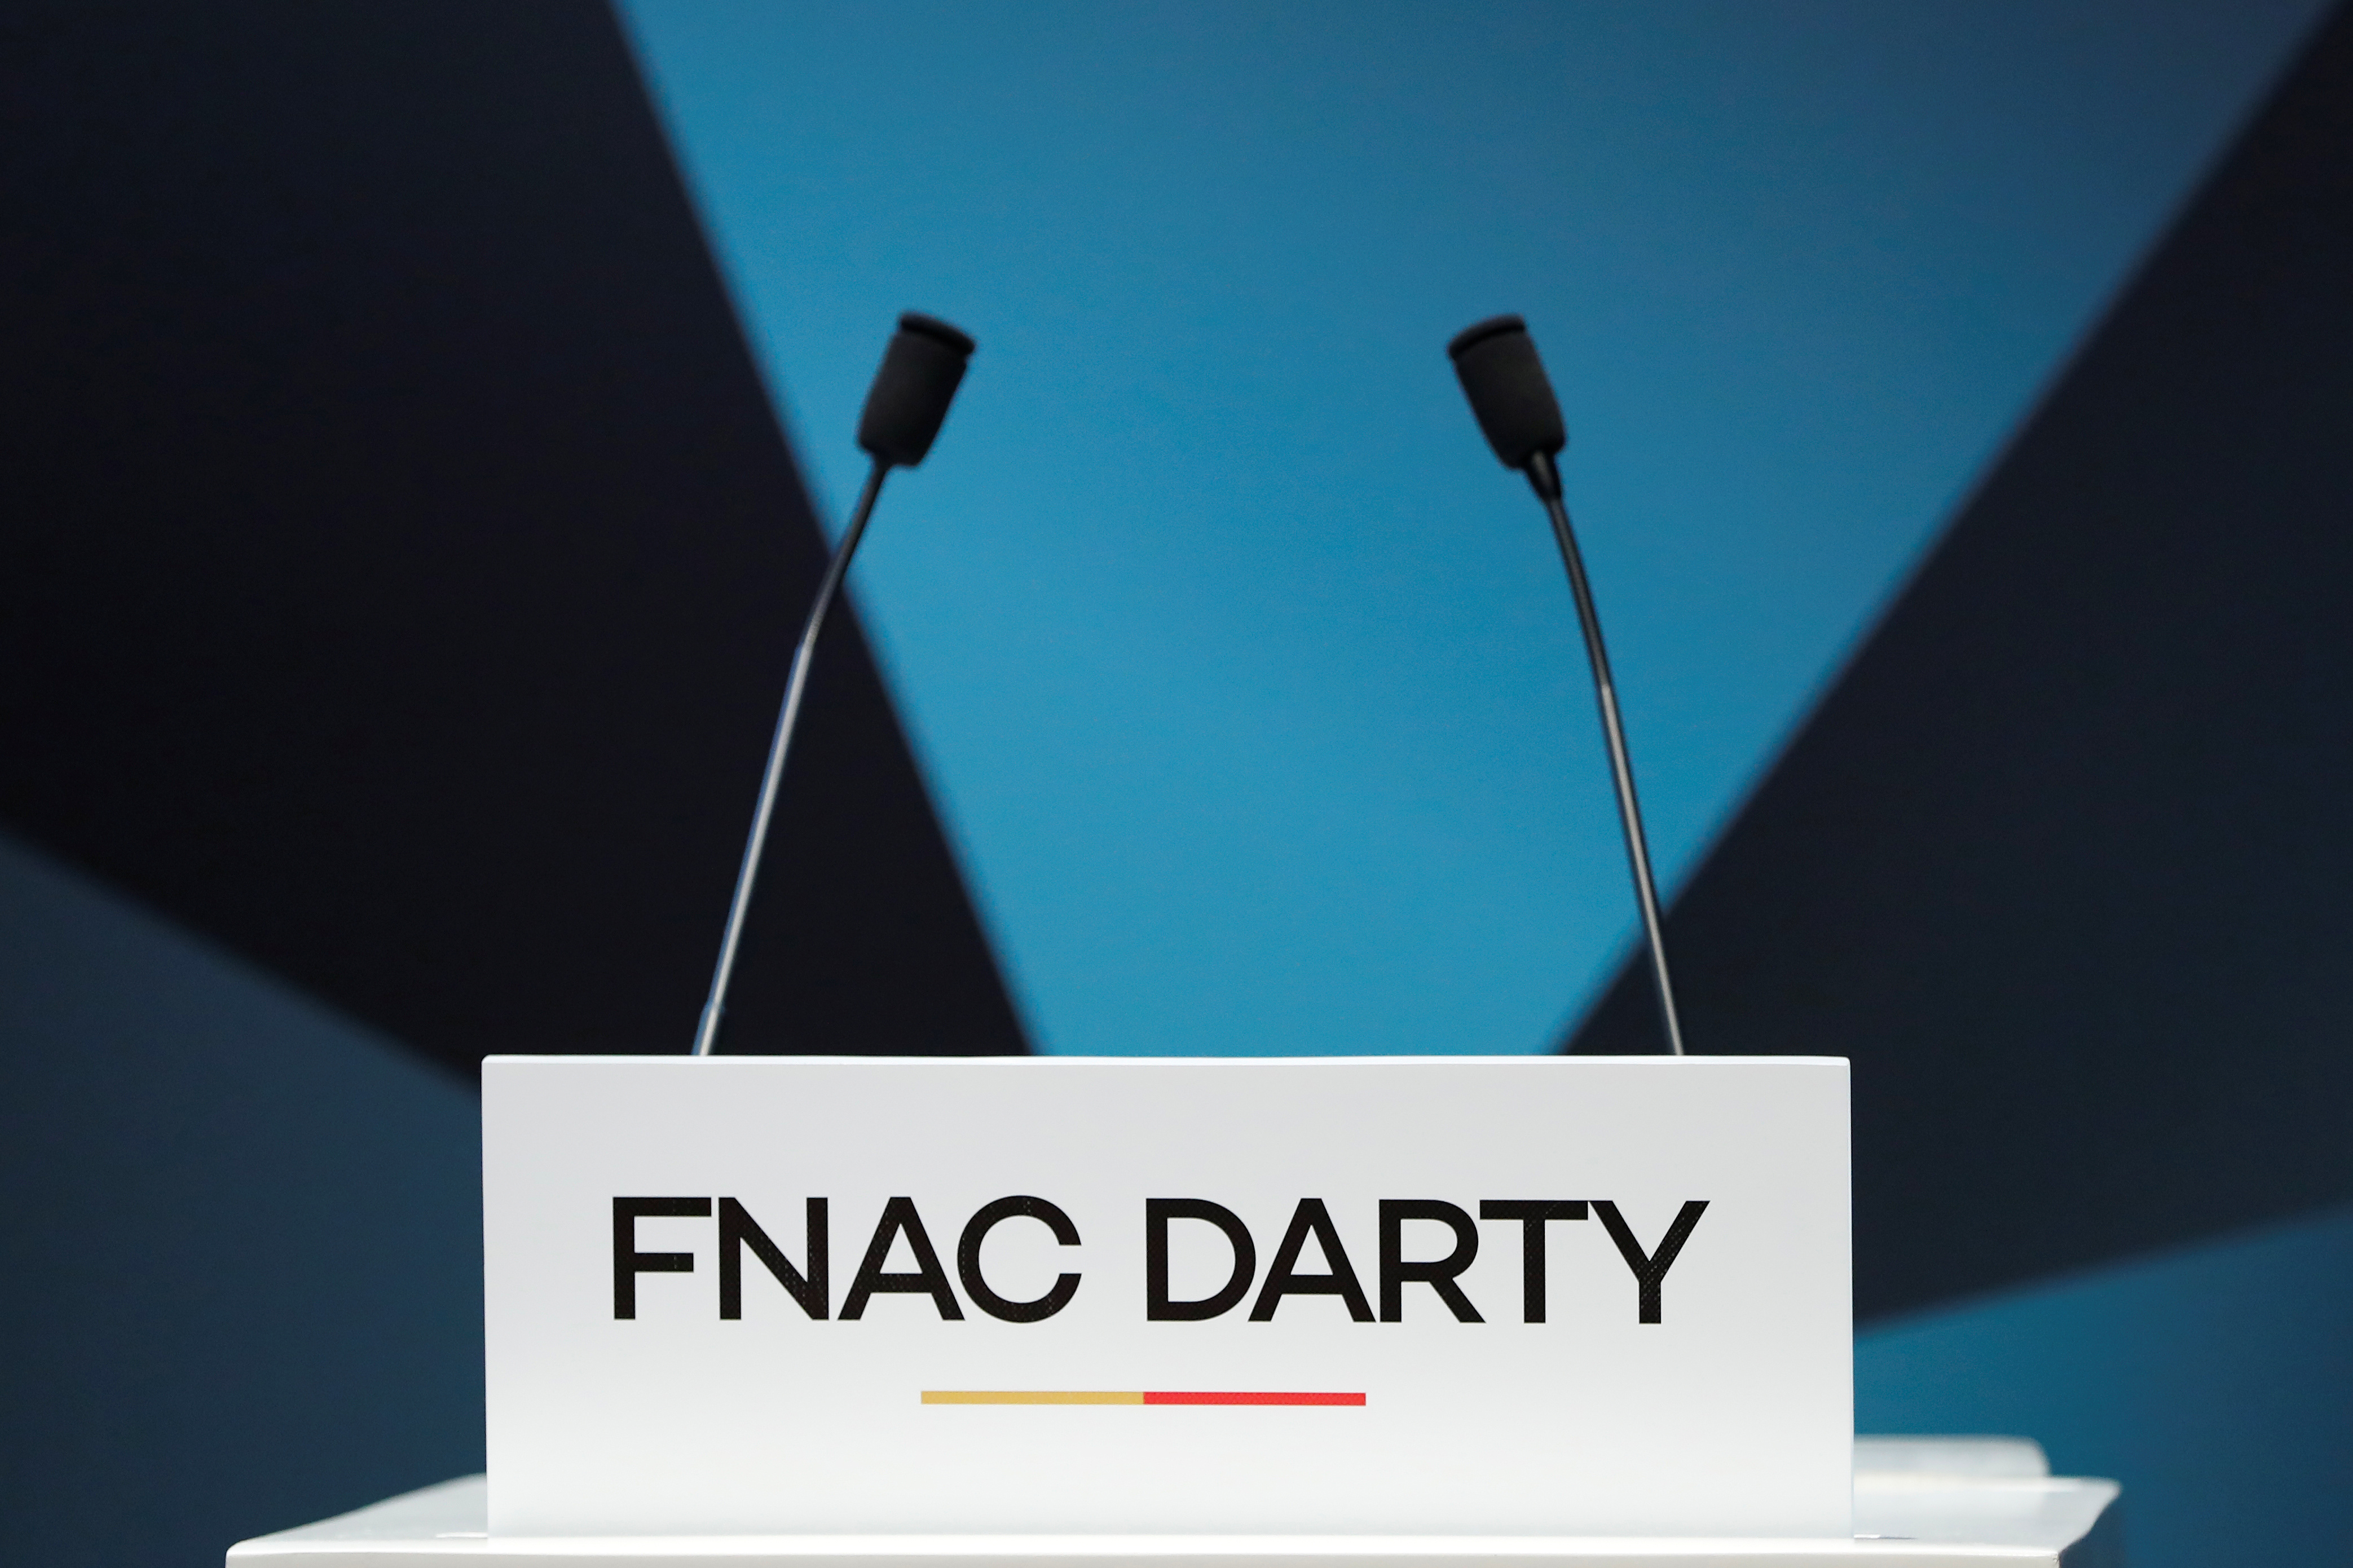 Fnac Darty veut racheter l'italien Unieuro et créer un géant européen de la distribution des produits électroniques